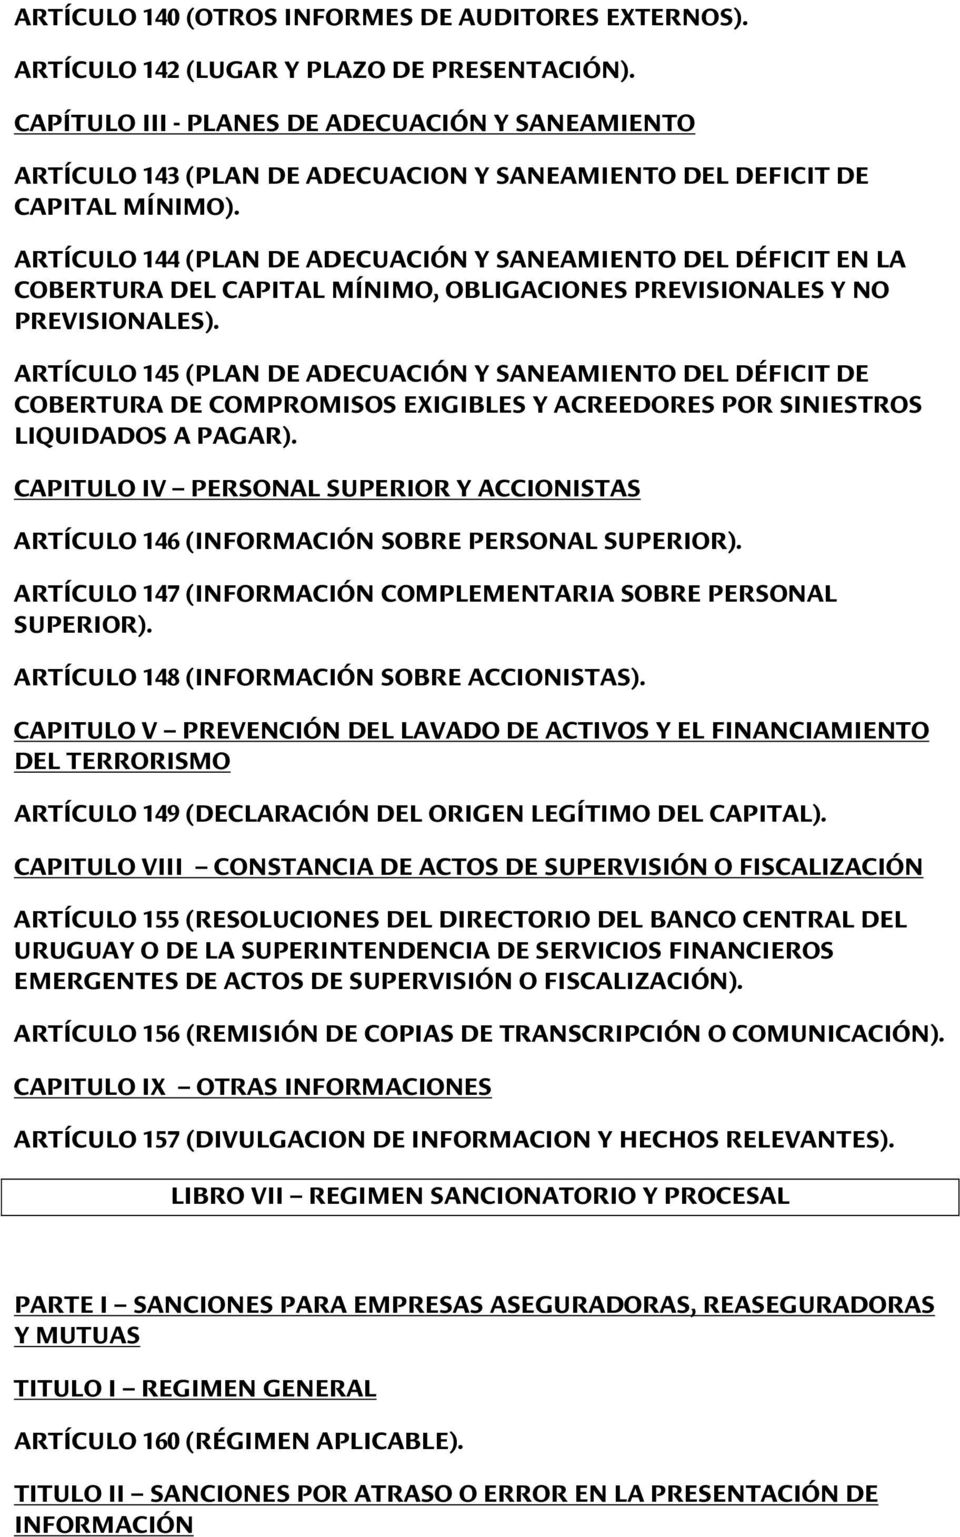 ARTÍCULO 144 (PLAN DE ADECUACIÓN Y SANEAMIENTO DEL DÉFICIT EN LA COBERTURA DEL CAPITAL MÍNIMO, OBLIGACIONES PREVISIONALES Y NO PREVISIONALES).